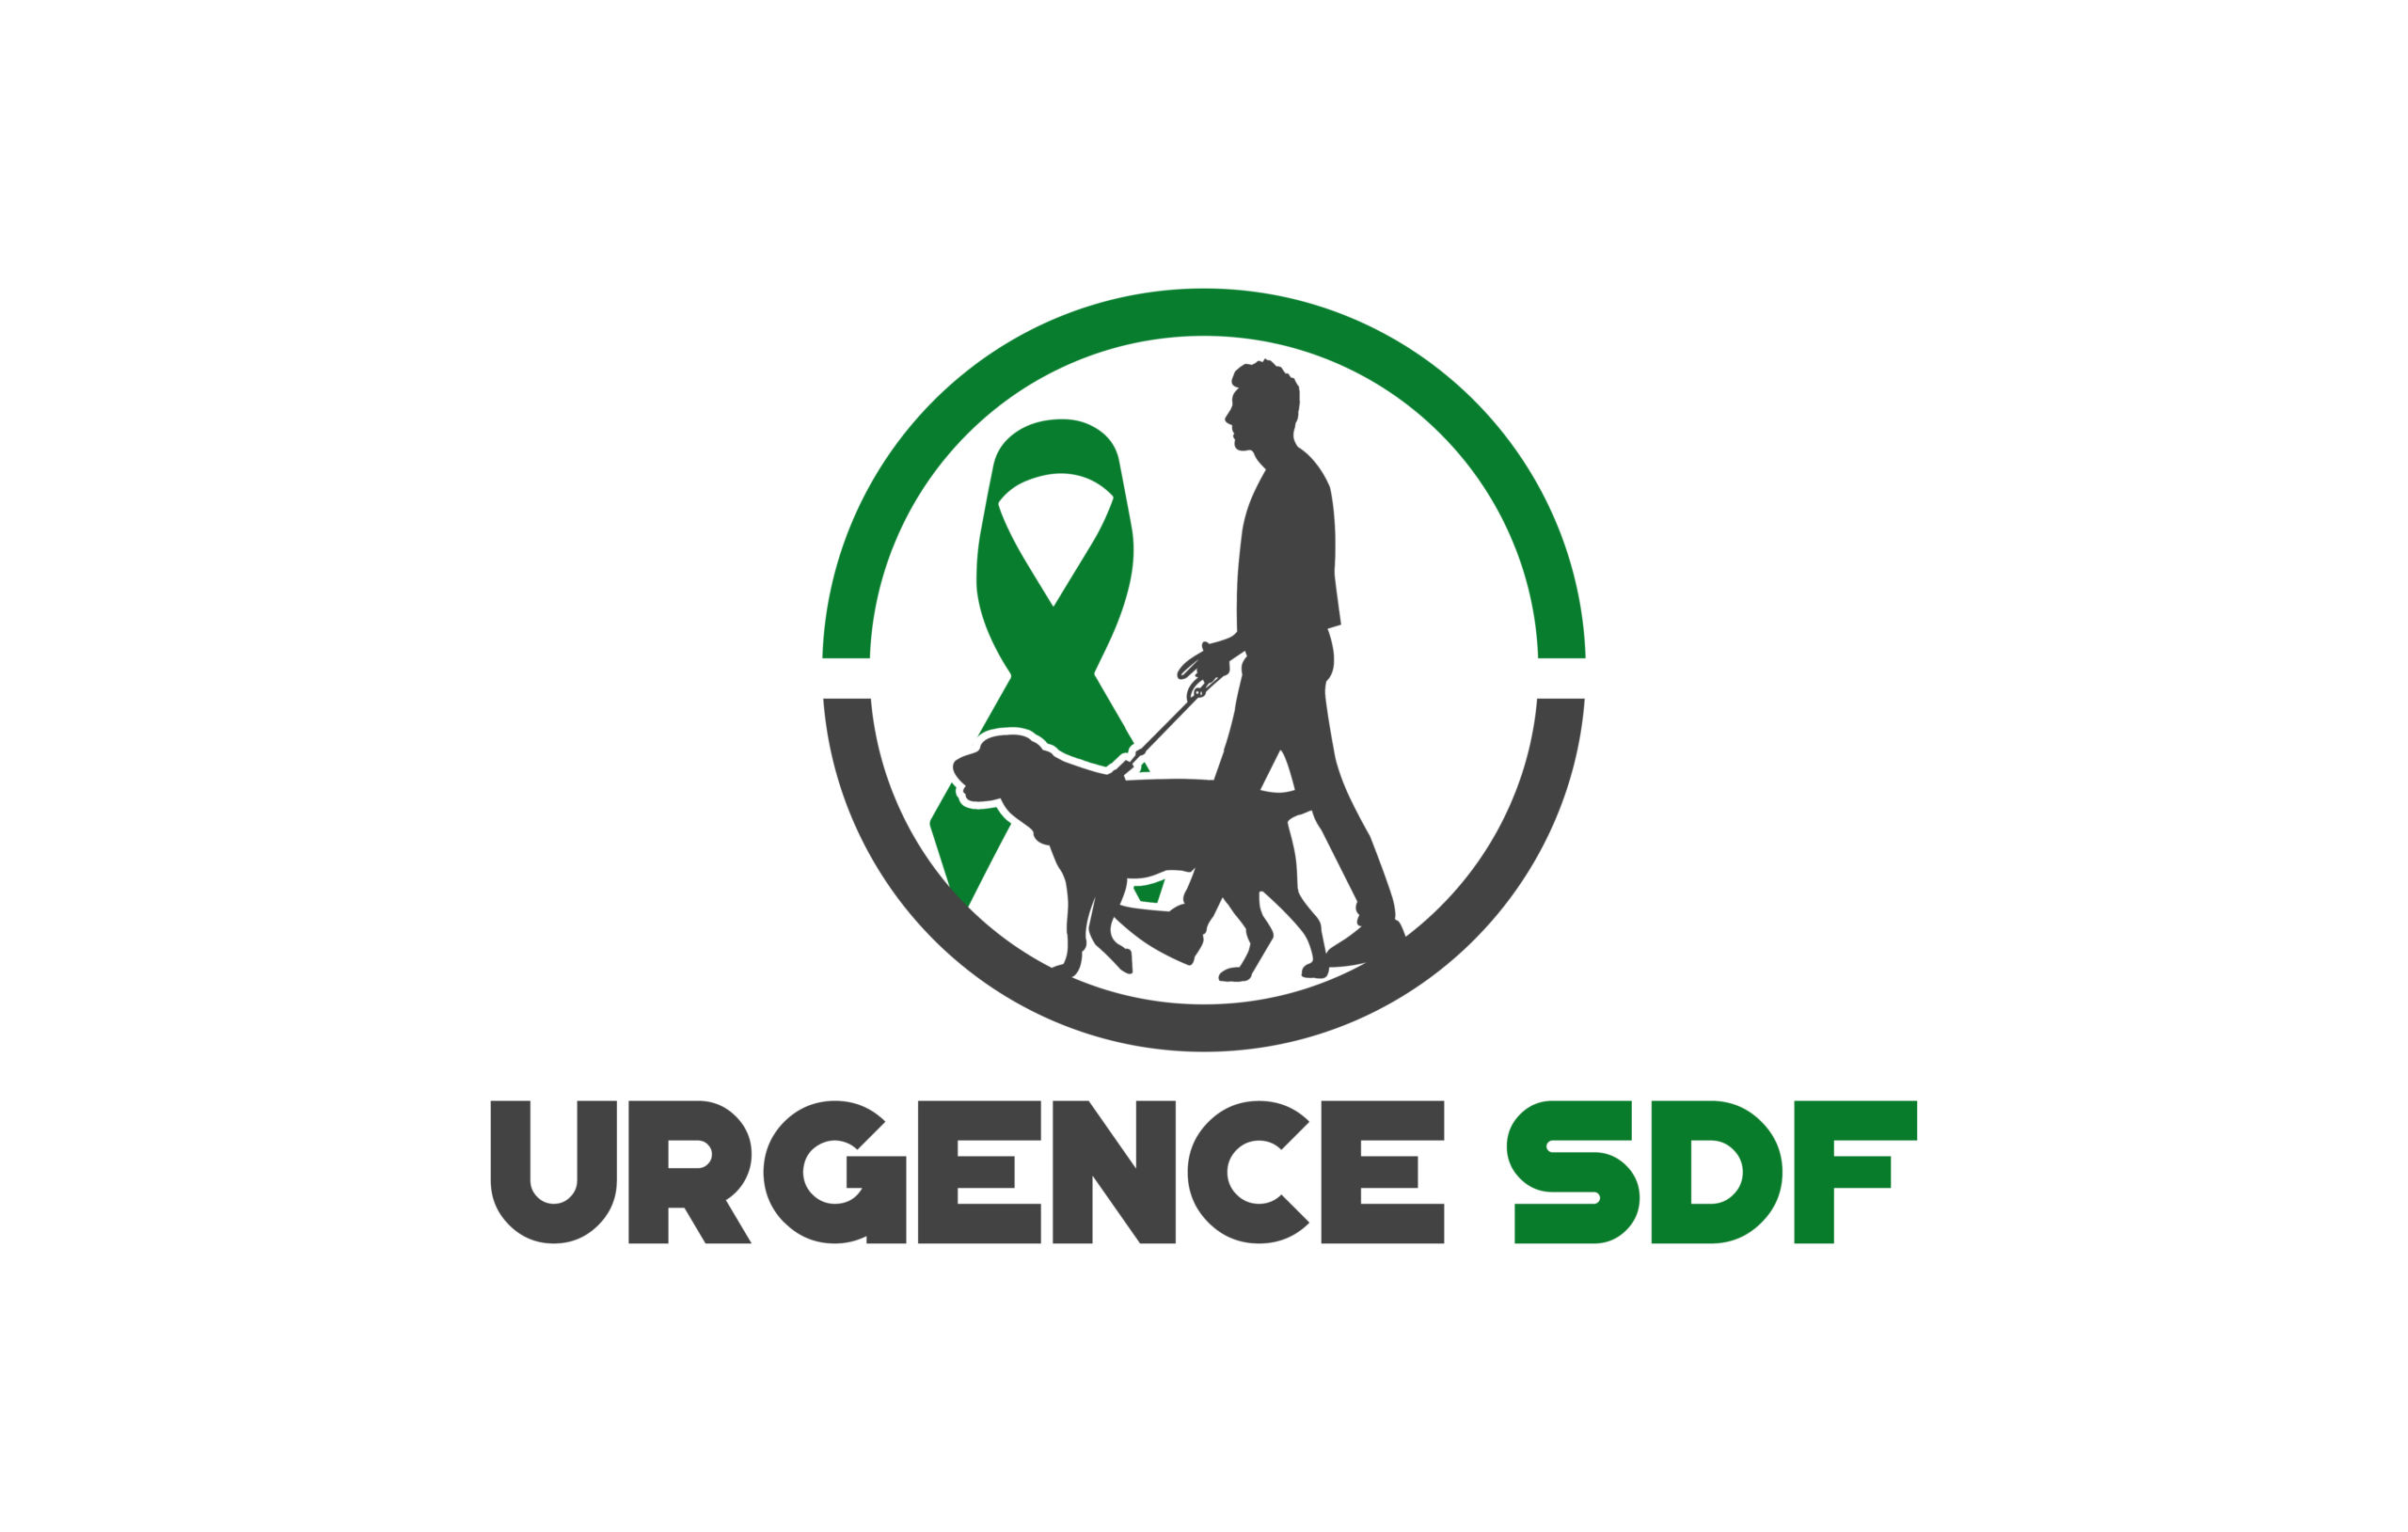 URGENCE sdf